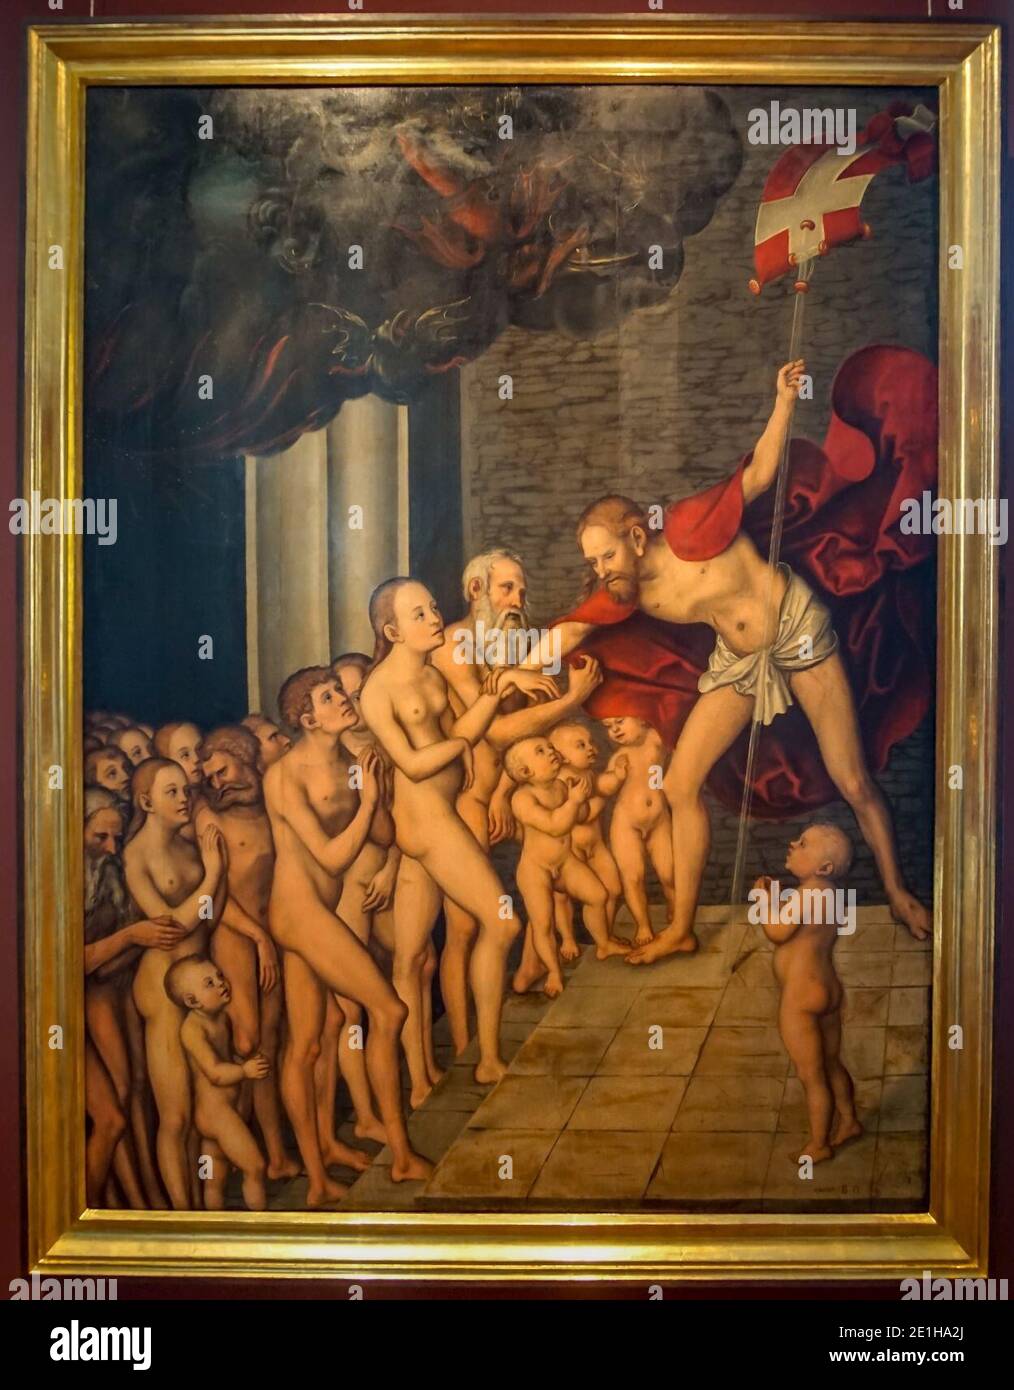 Lucas Cranach der Ältere-Passionszyklus-Christus in der Vorhölle-4712. Stock Photo